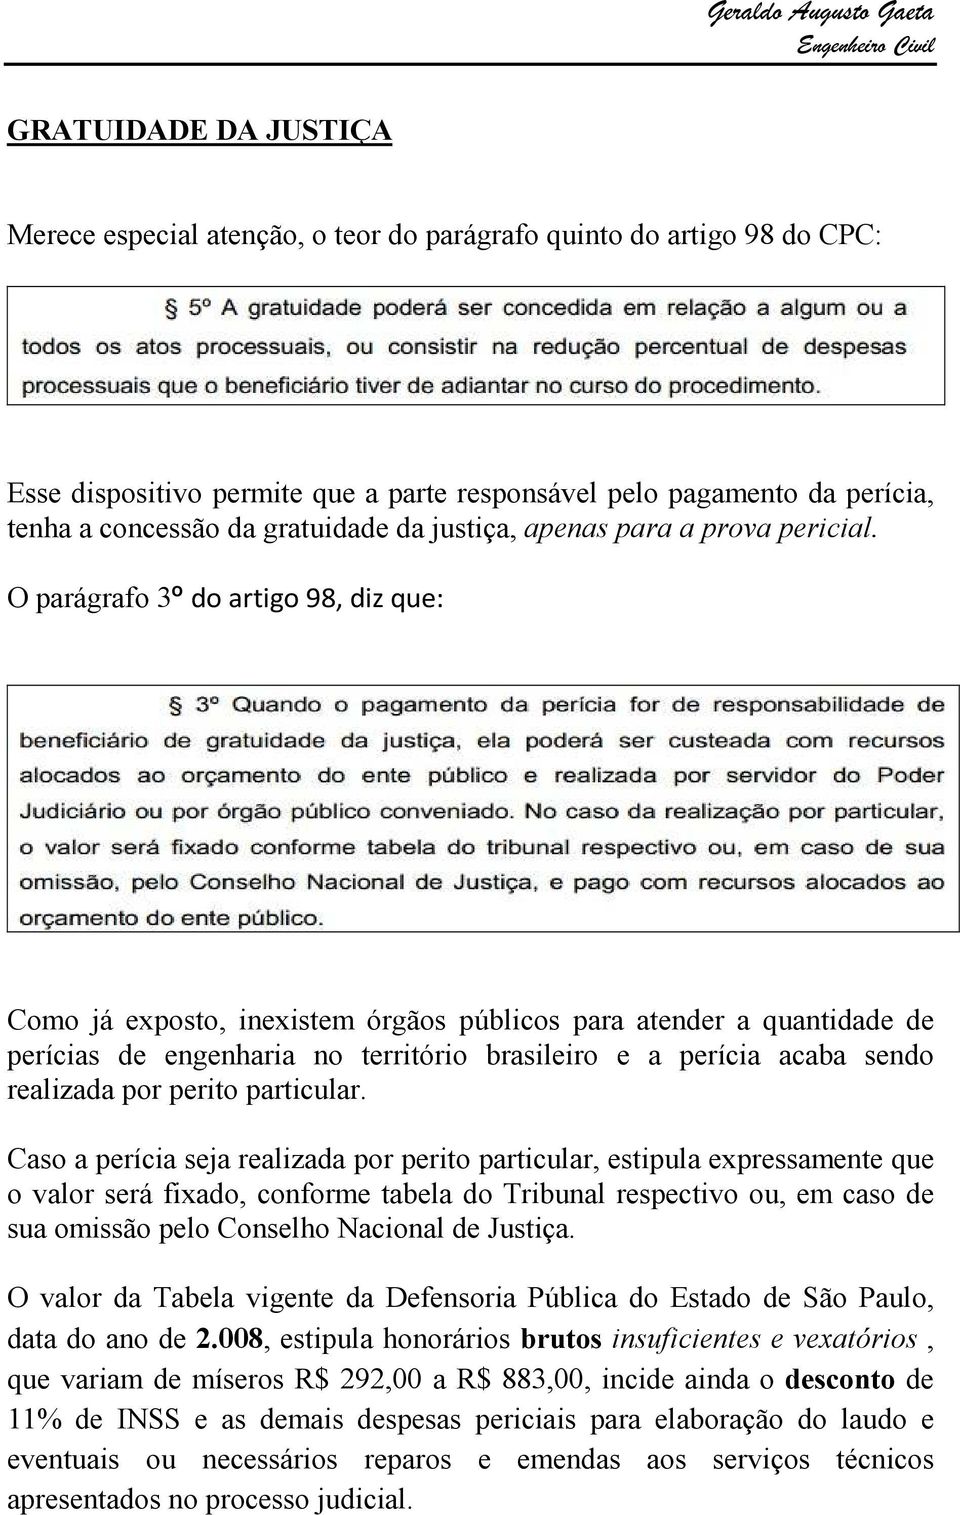 O parágrafo 3º do artigo 98, diz que: Como já exposto, inexistem órgãos públicos para atender a quantidade de perícias de engenharia no território brasileiro e a perícia acaba sendo realizada por